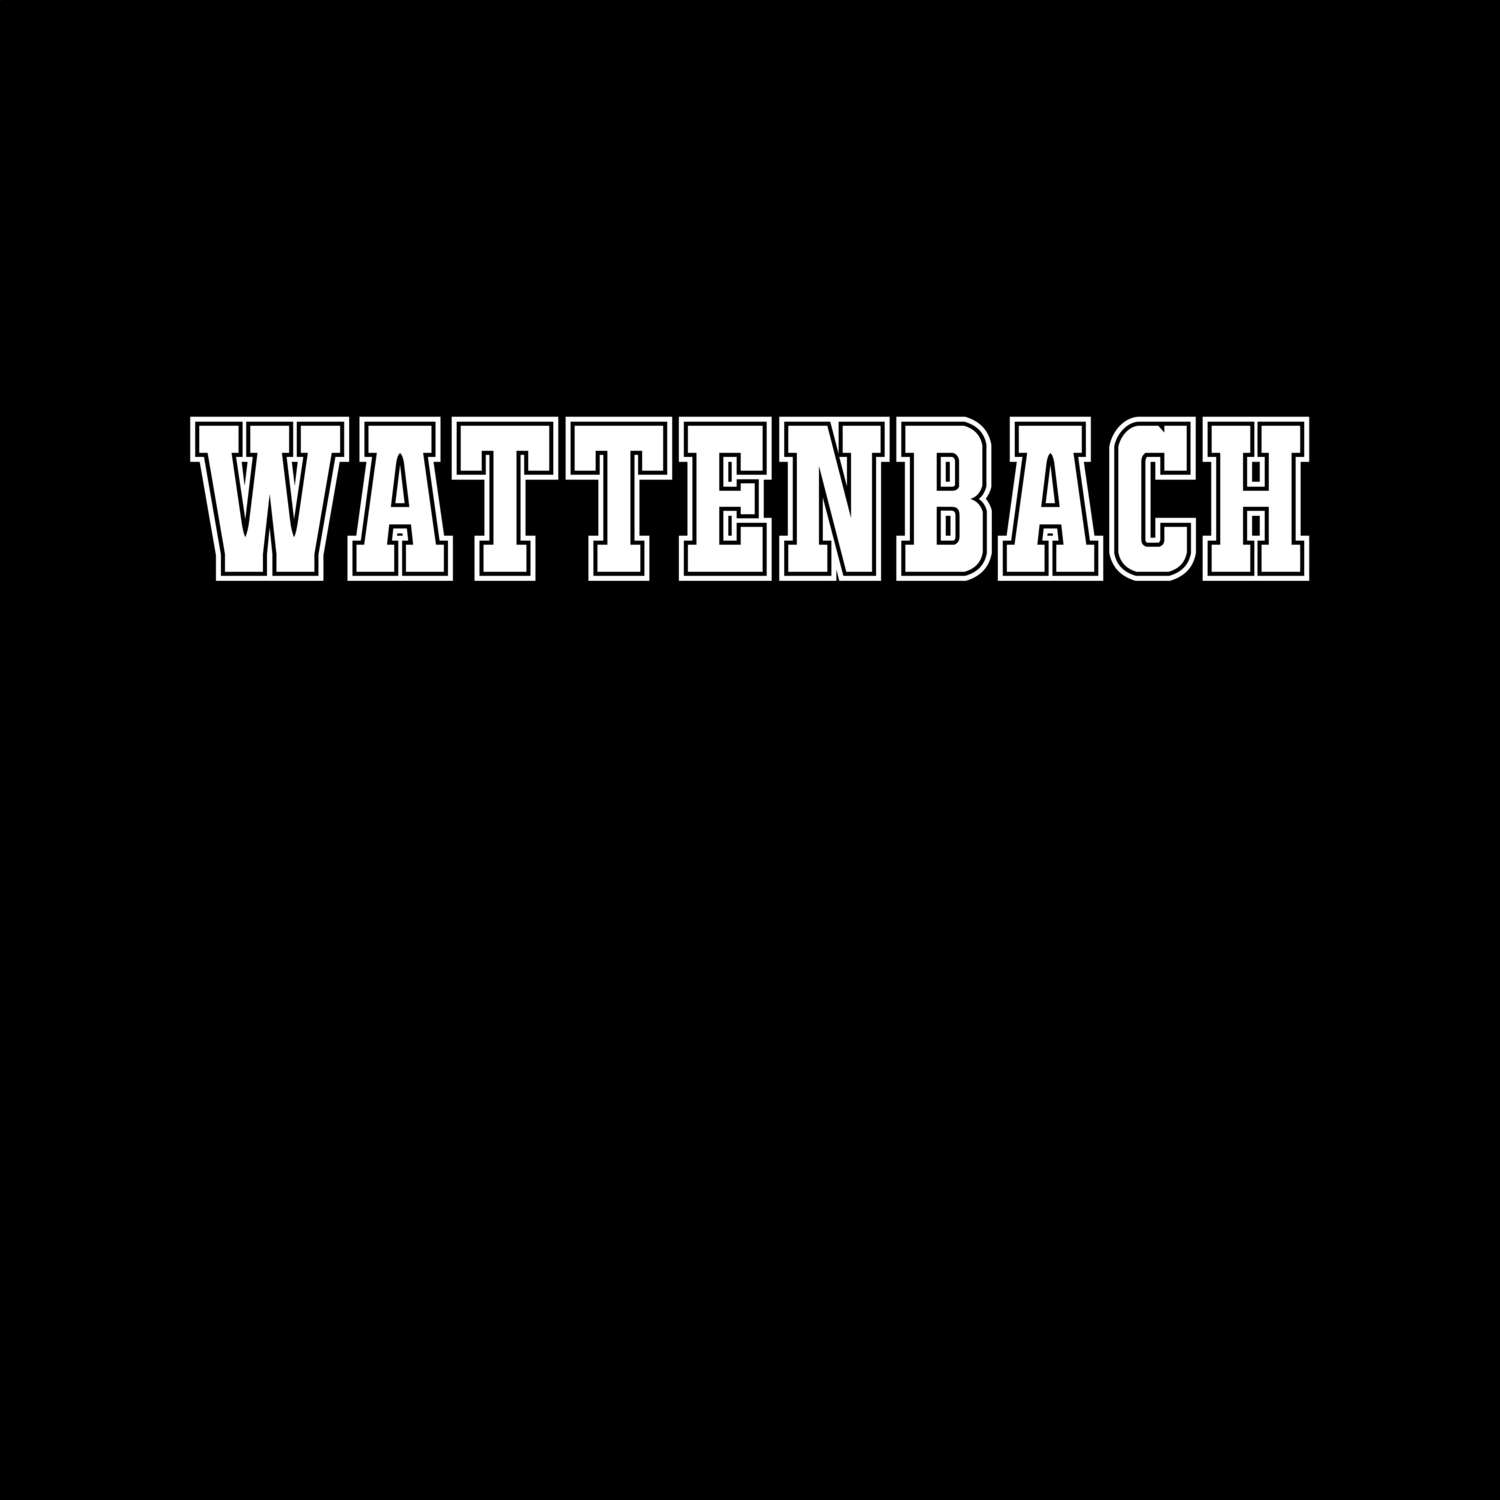 Wattenbach T-Shirt »Classic«